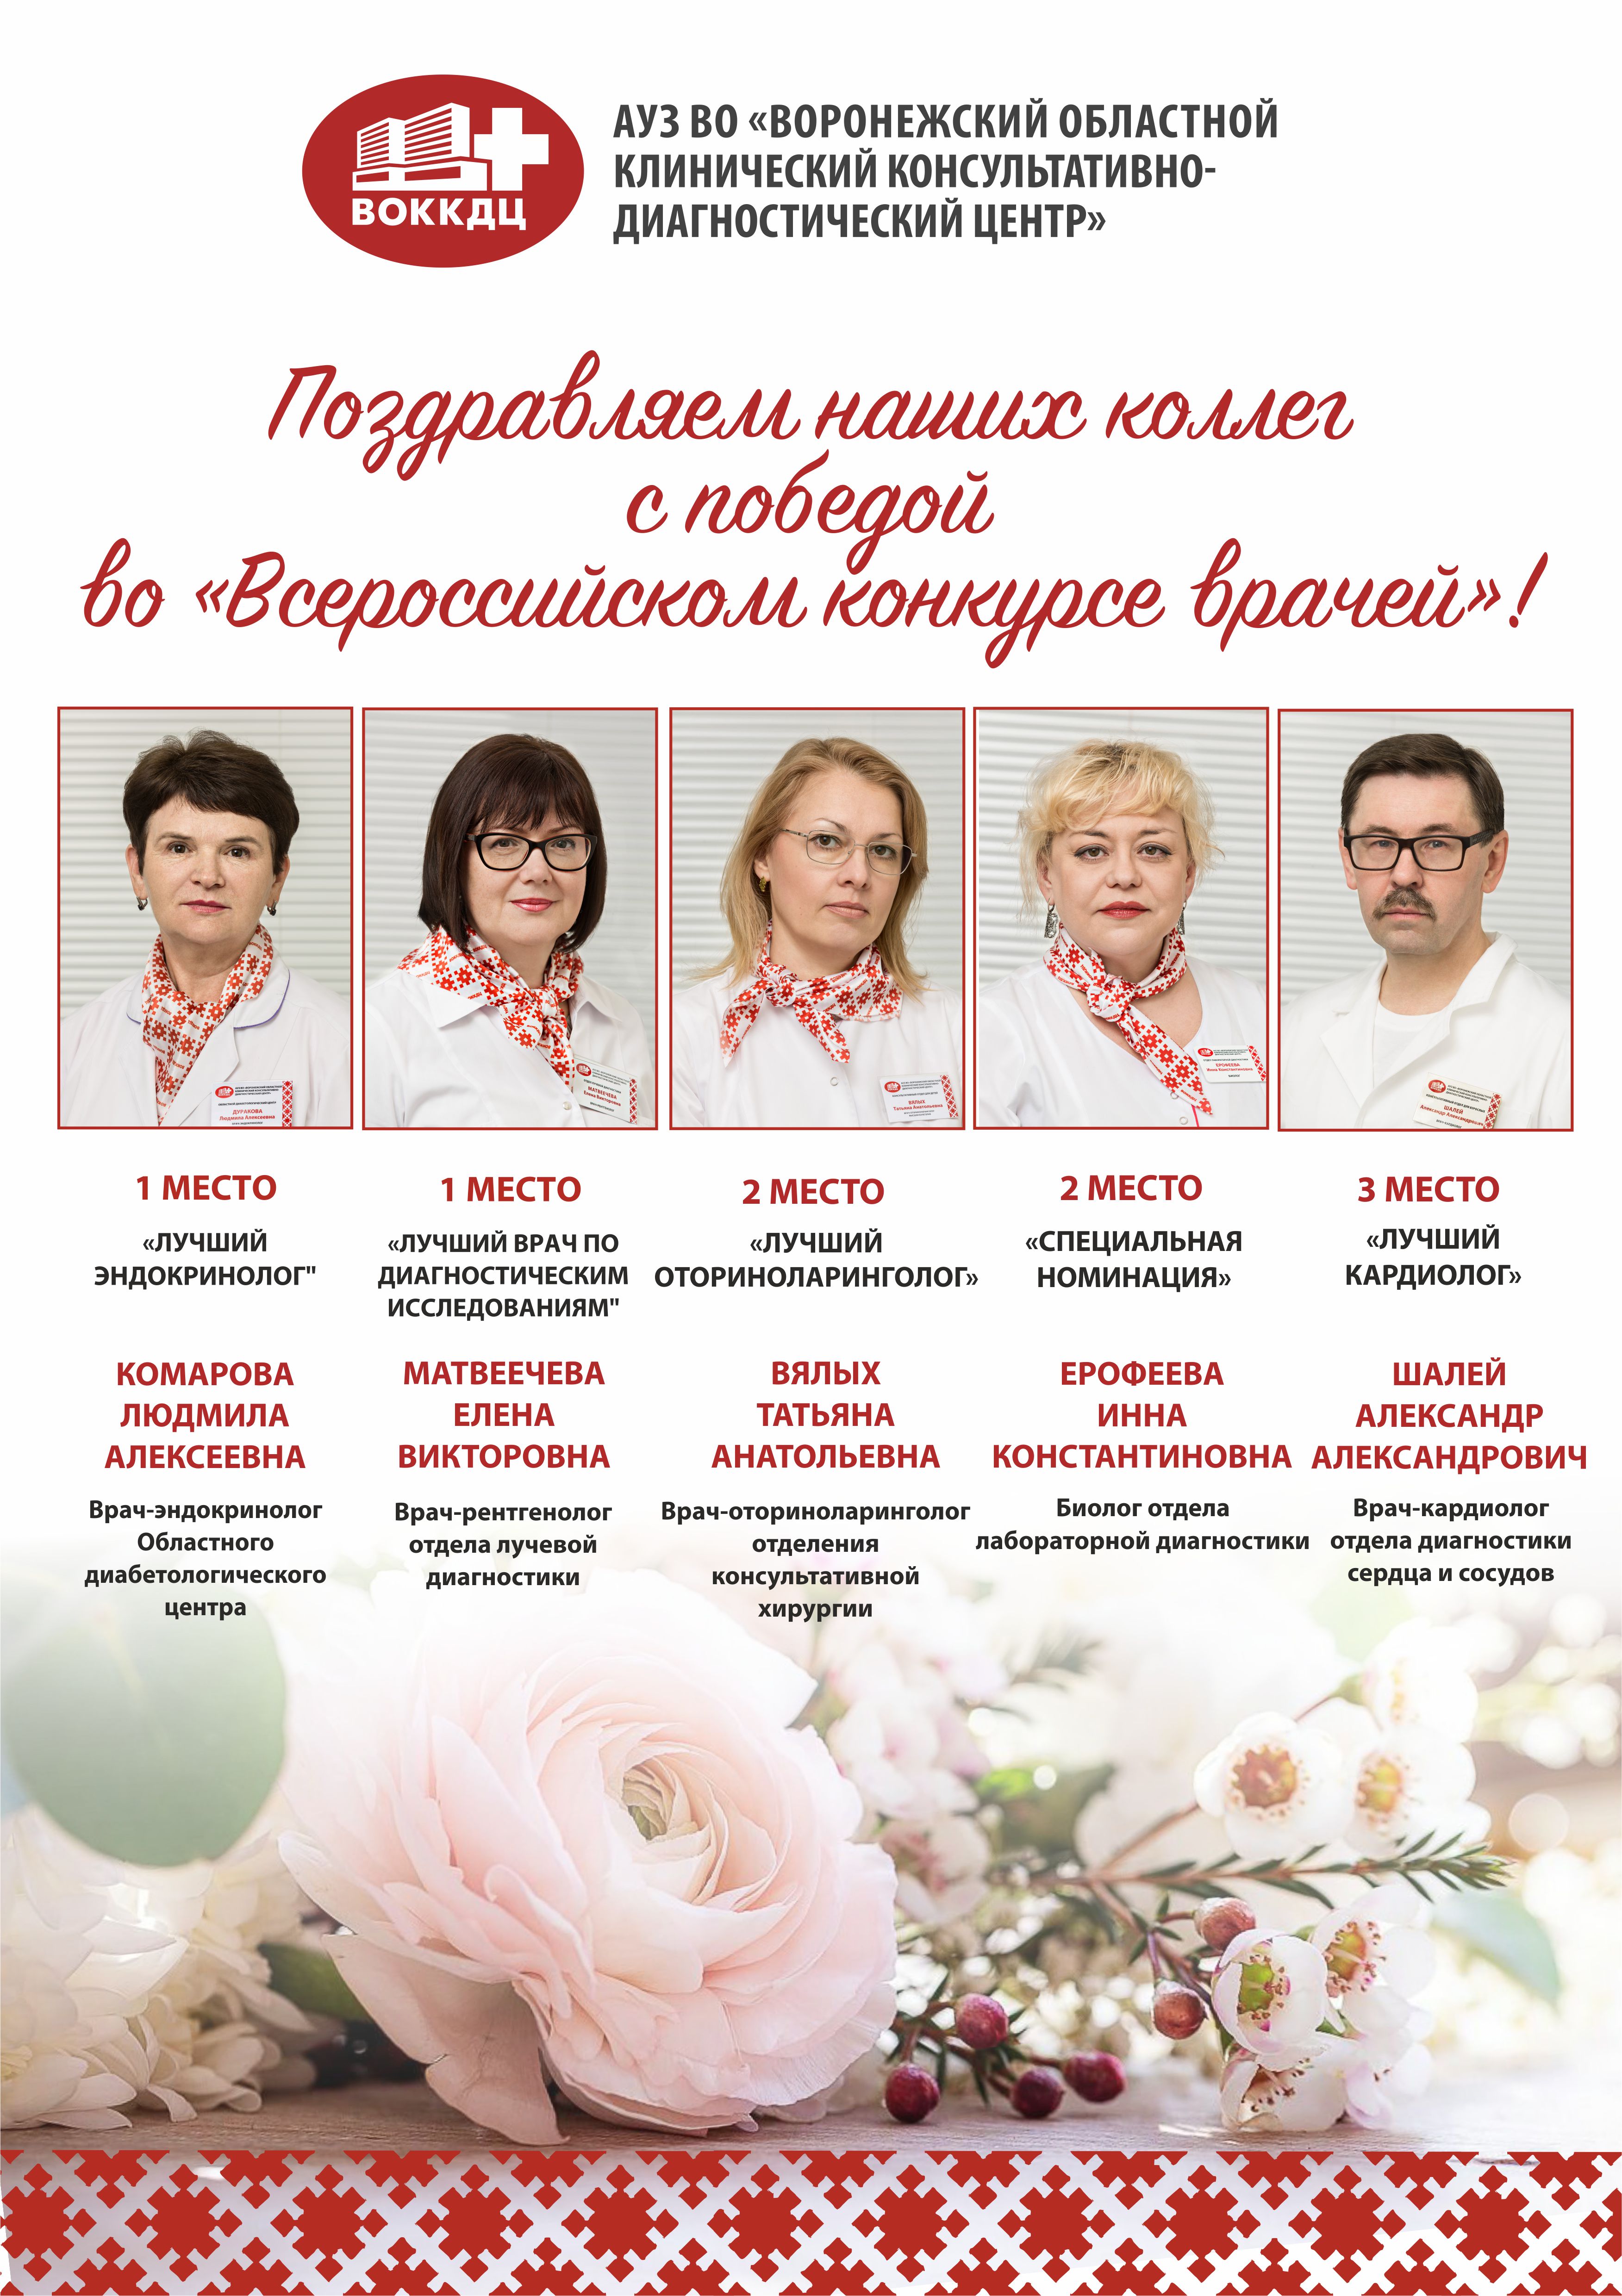 Поздравляем наших коллег с победой во «Всероссийском конкурсе врачей»!